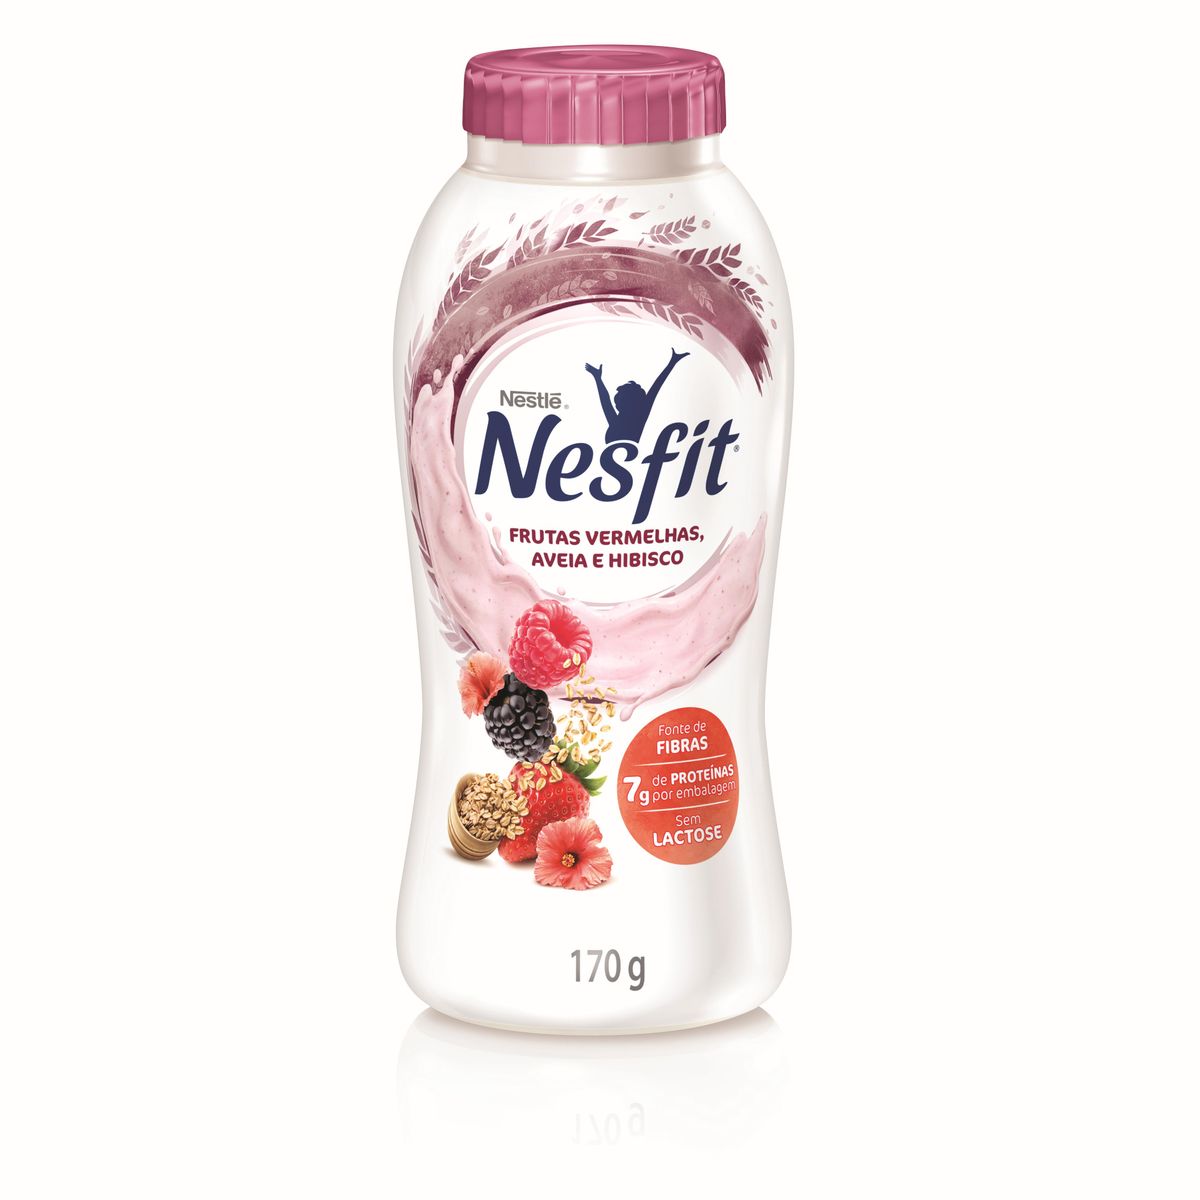 Iogurte Nesfit Frutas Vermelhas, Hibisco e Aveia 170g